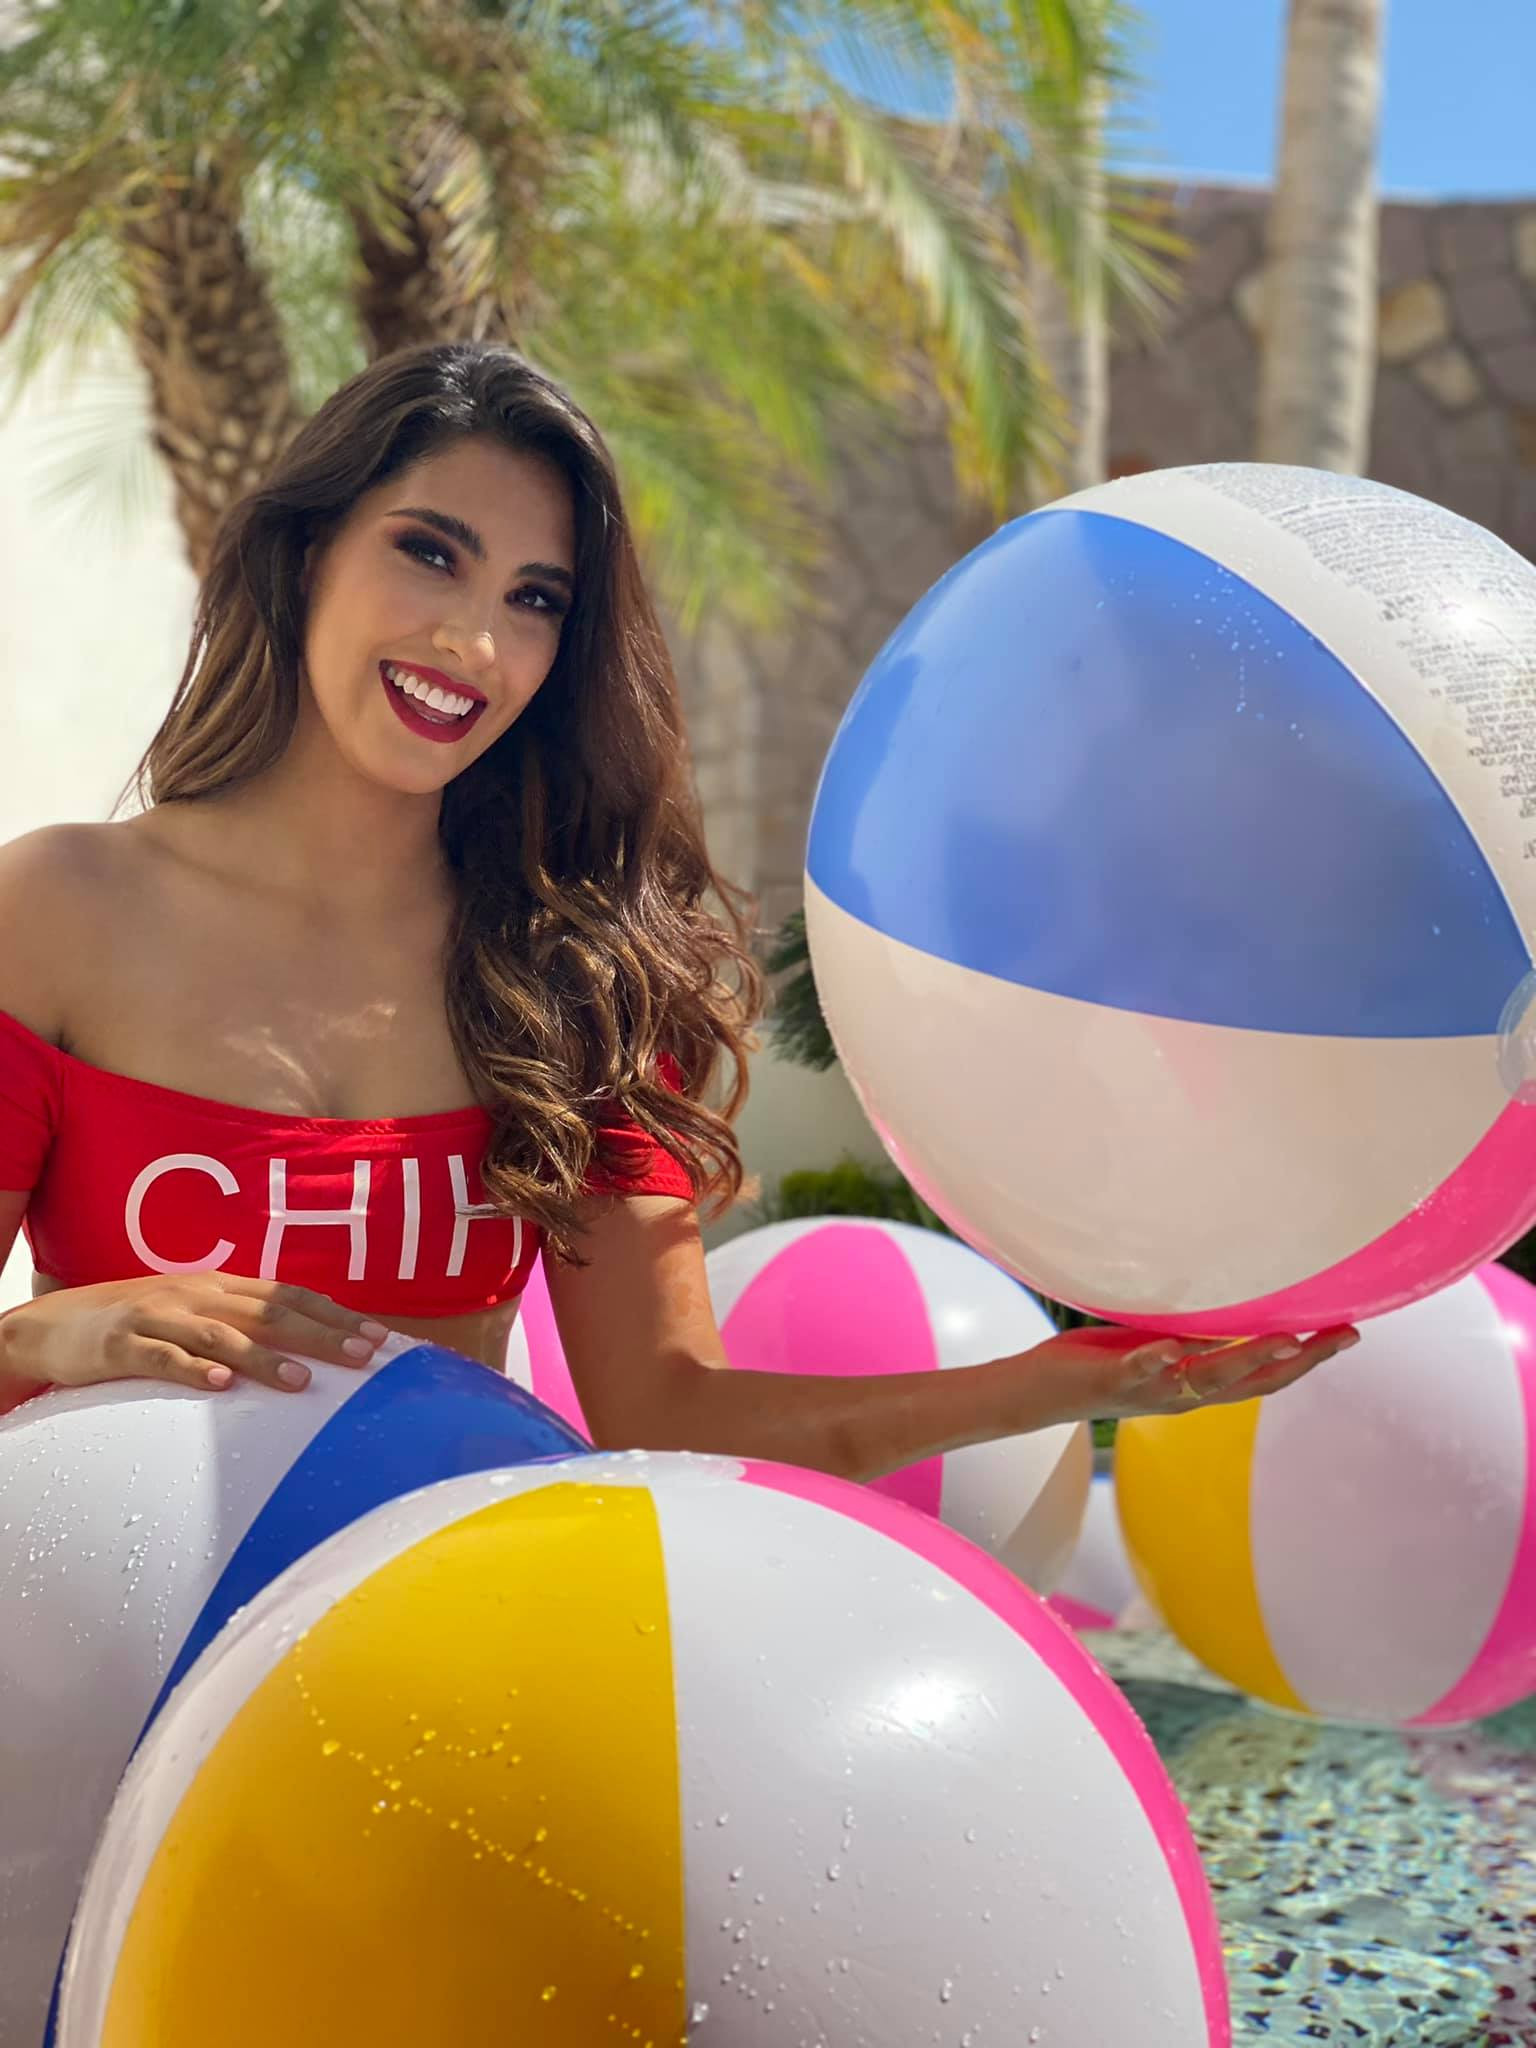 Chihuahua - candidatas a miss mexico 2021, final: 1 july. - Página 19 NmRxEu